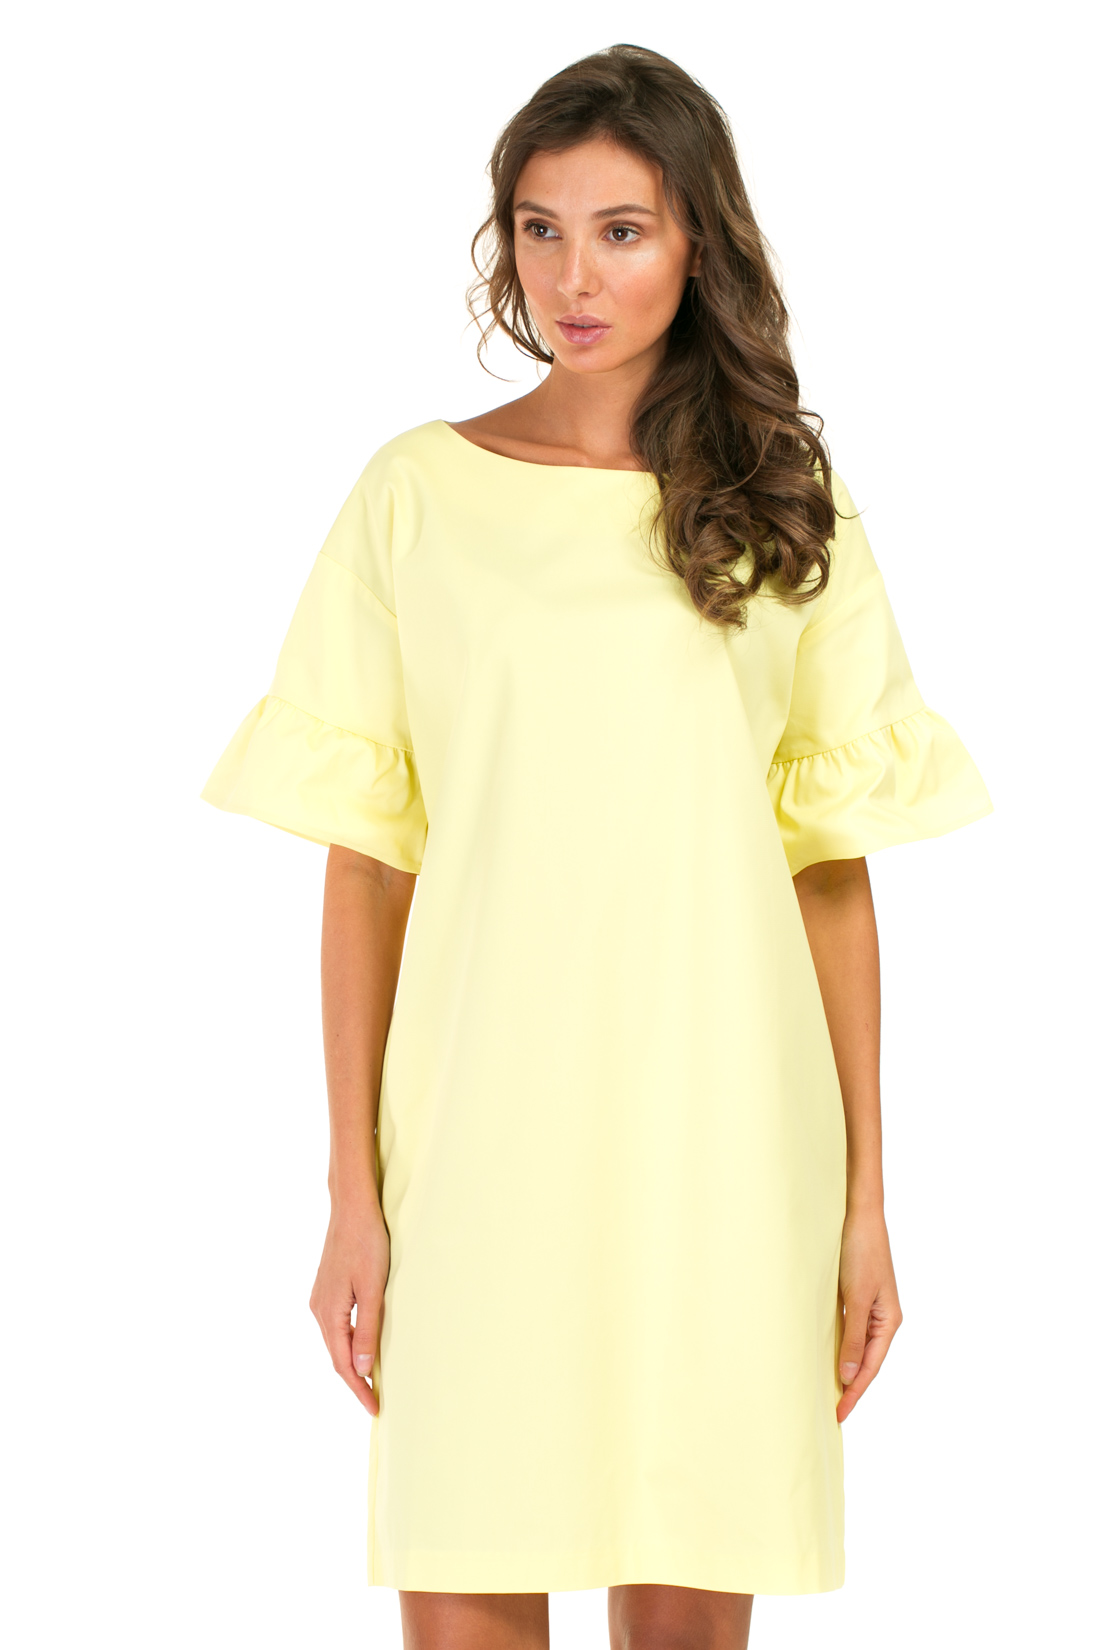 Платье с рукавами-воланами (арт. baon B457043), размер L, цвет желтый Платье с рукавами-воланами (арт. baon B457043) - фото 5